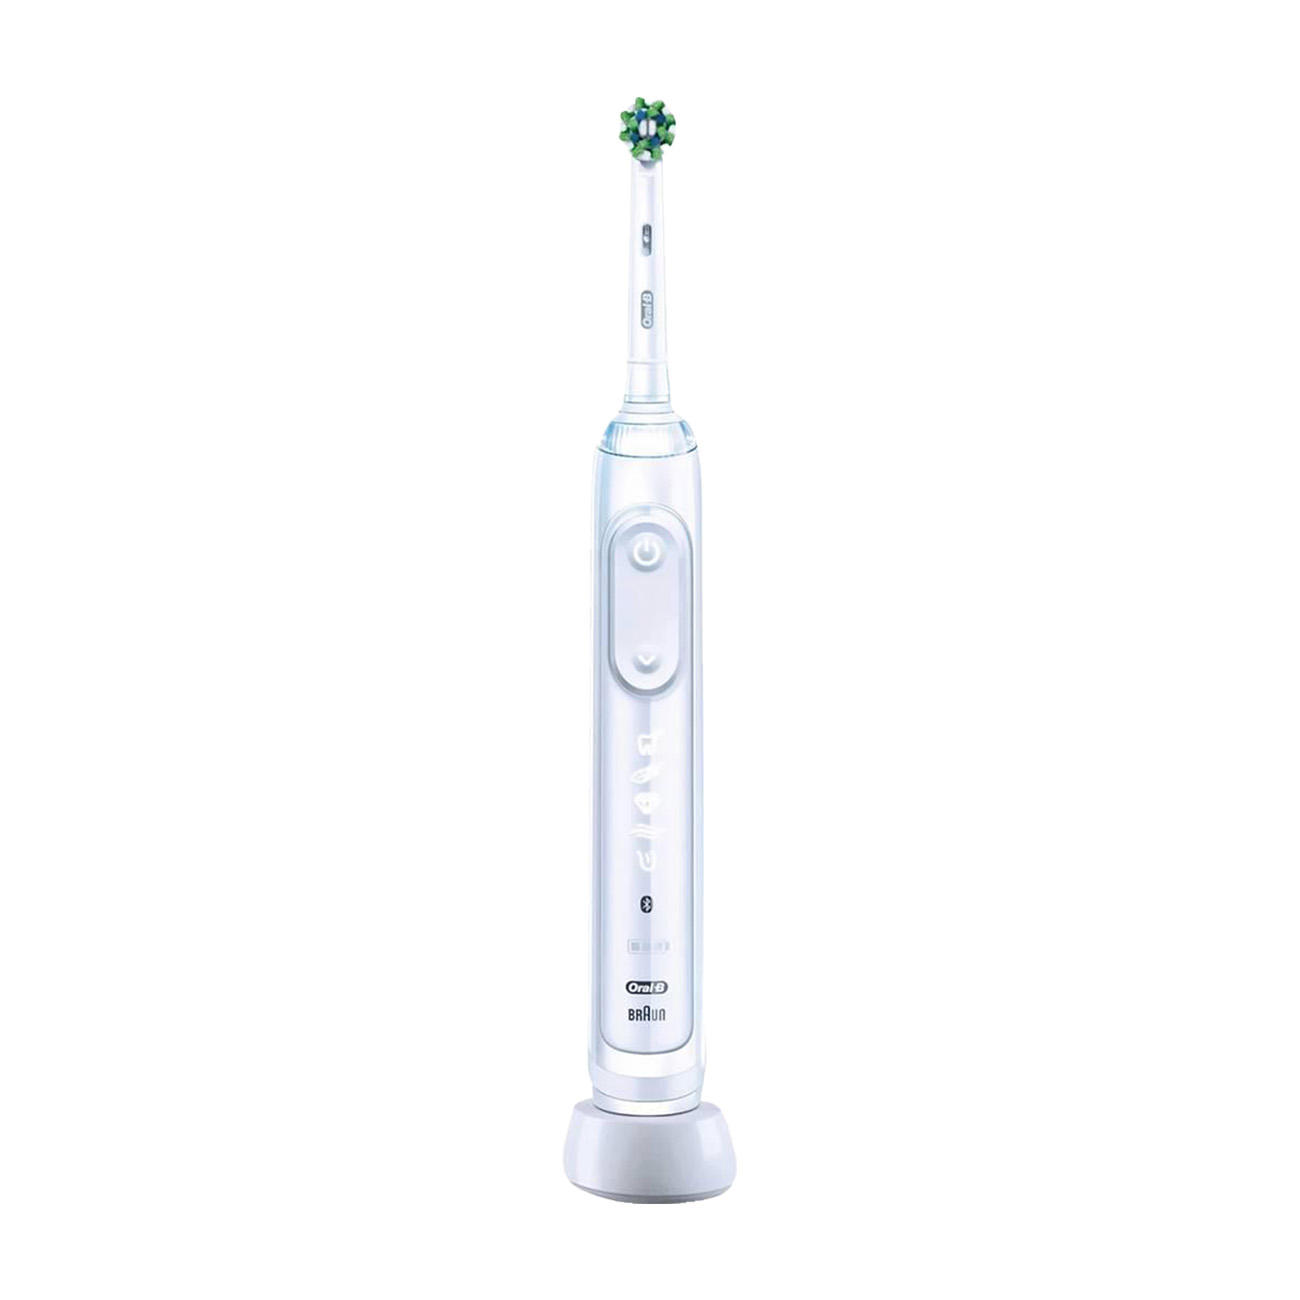 Oral-B Genius X White | Elektrische Zahbürste | Vibrierende Zahnbürste | künstliche Intelligenz & Bluetooth-App | Zahnpflege